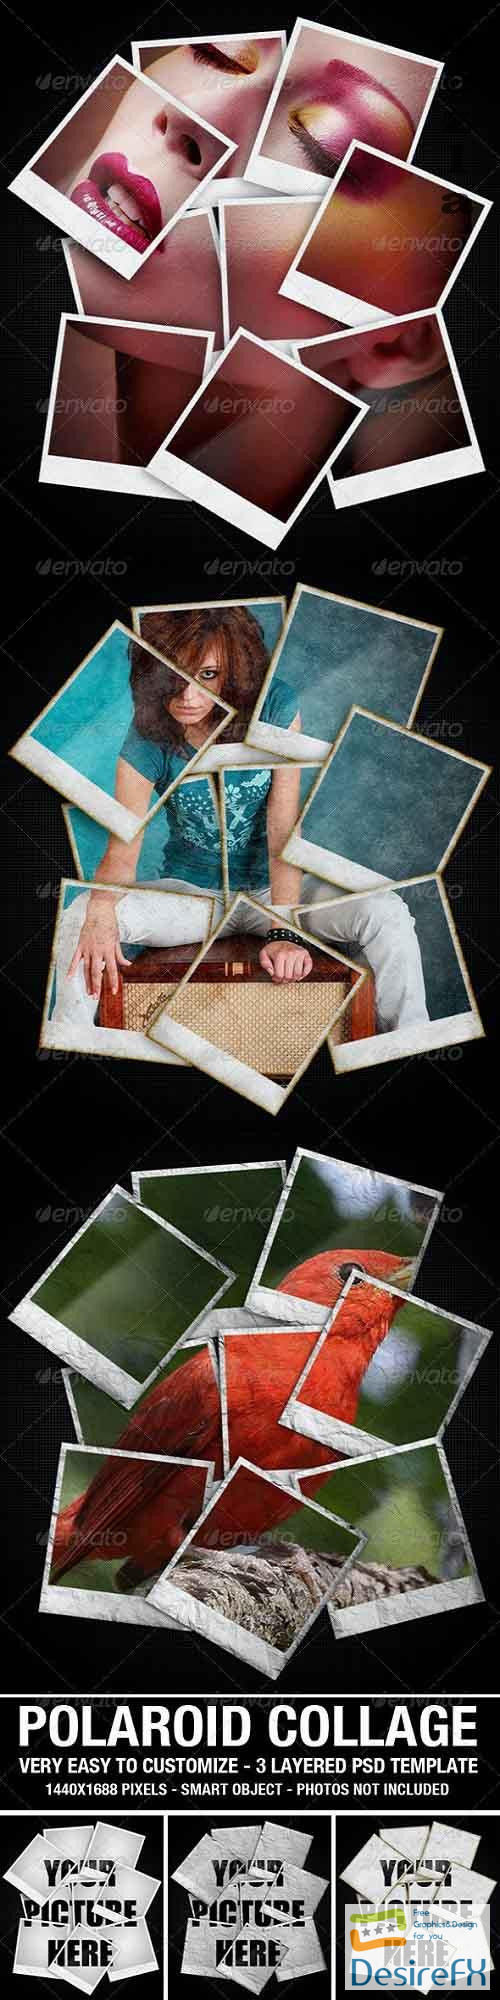 Polaroid Collage Photo Template 2627722